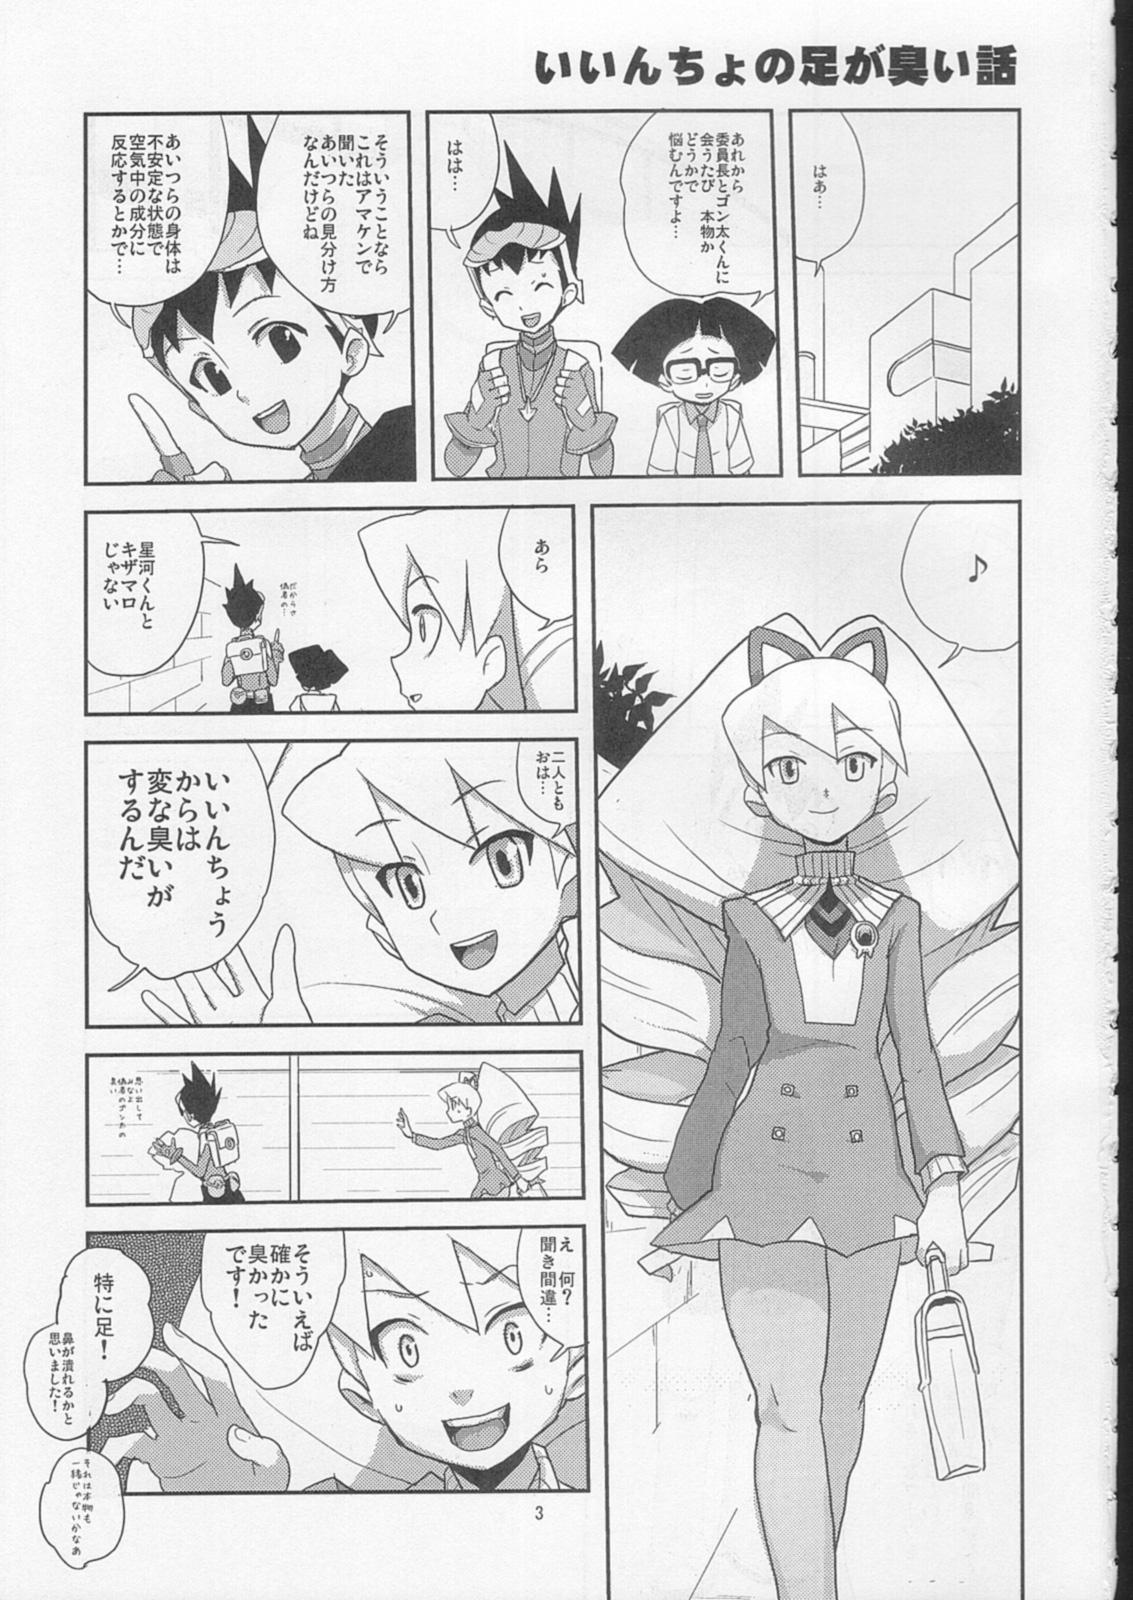 Seduction Sukisuki Bokura no Drill Iincho! - Megaman Mega man star force Vintage - Page 2